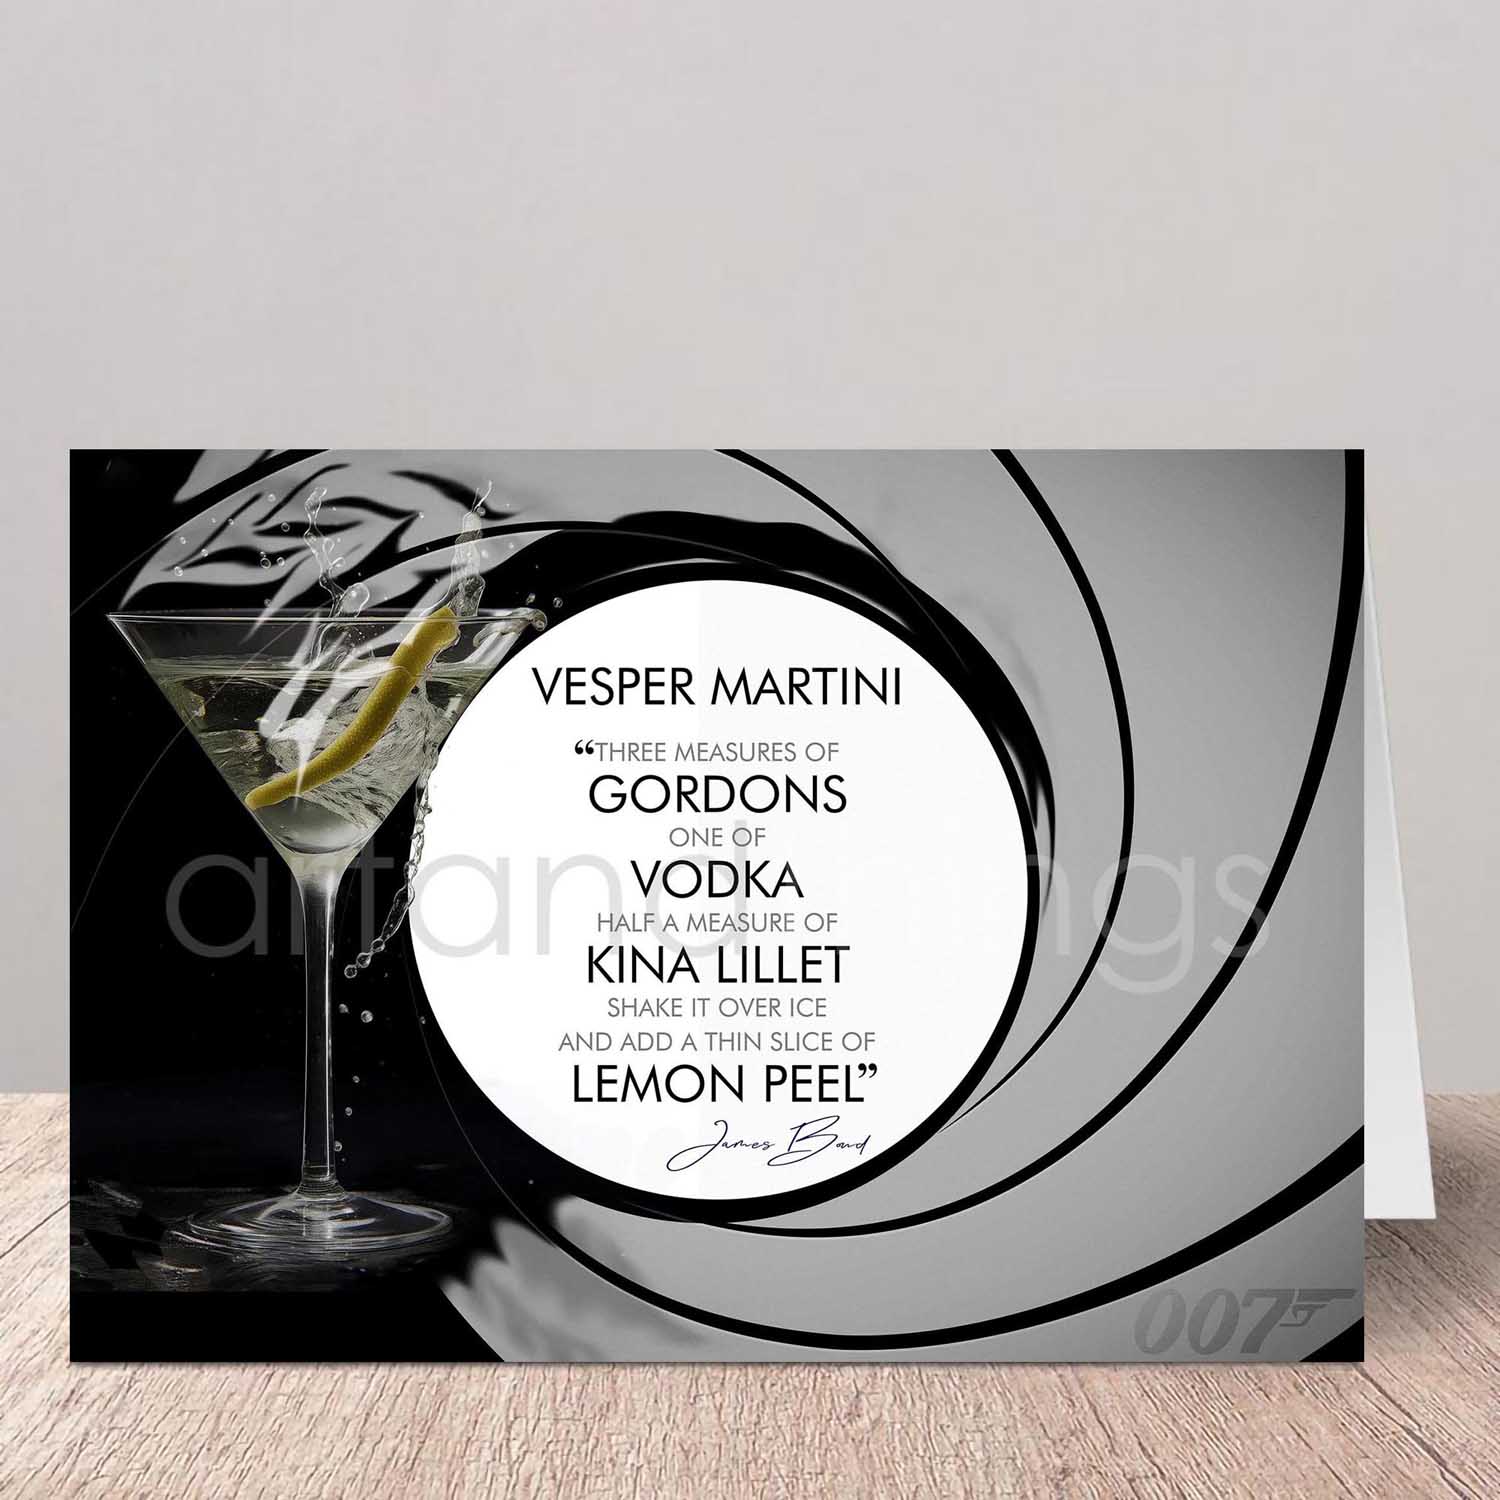 Vesper Martini Greetings Card